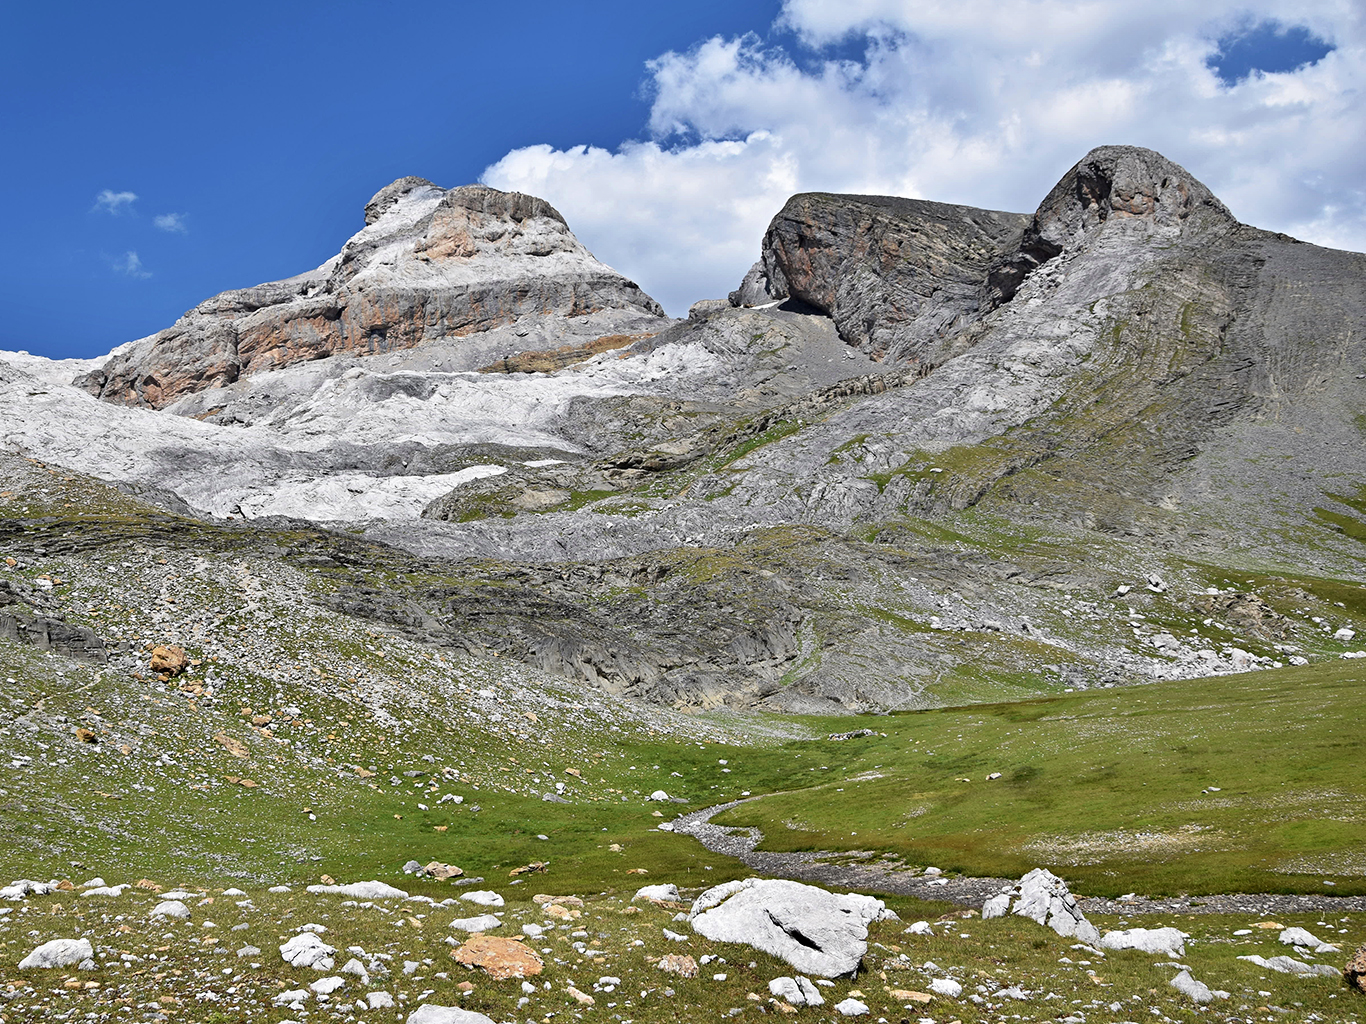 Pohoří Pyreneje nabízí nekonečné množství fotogenických scenérií